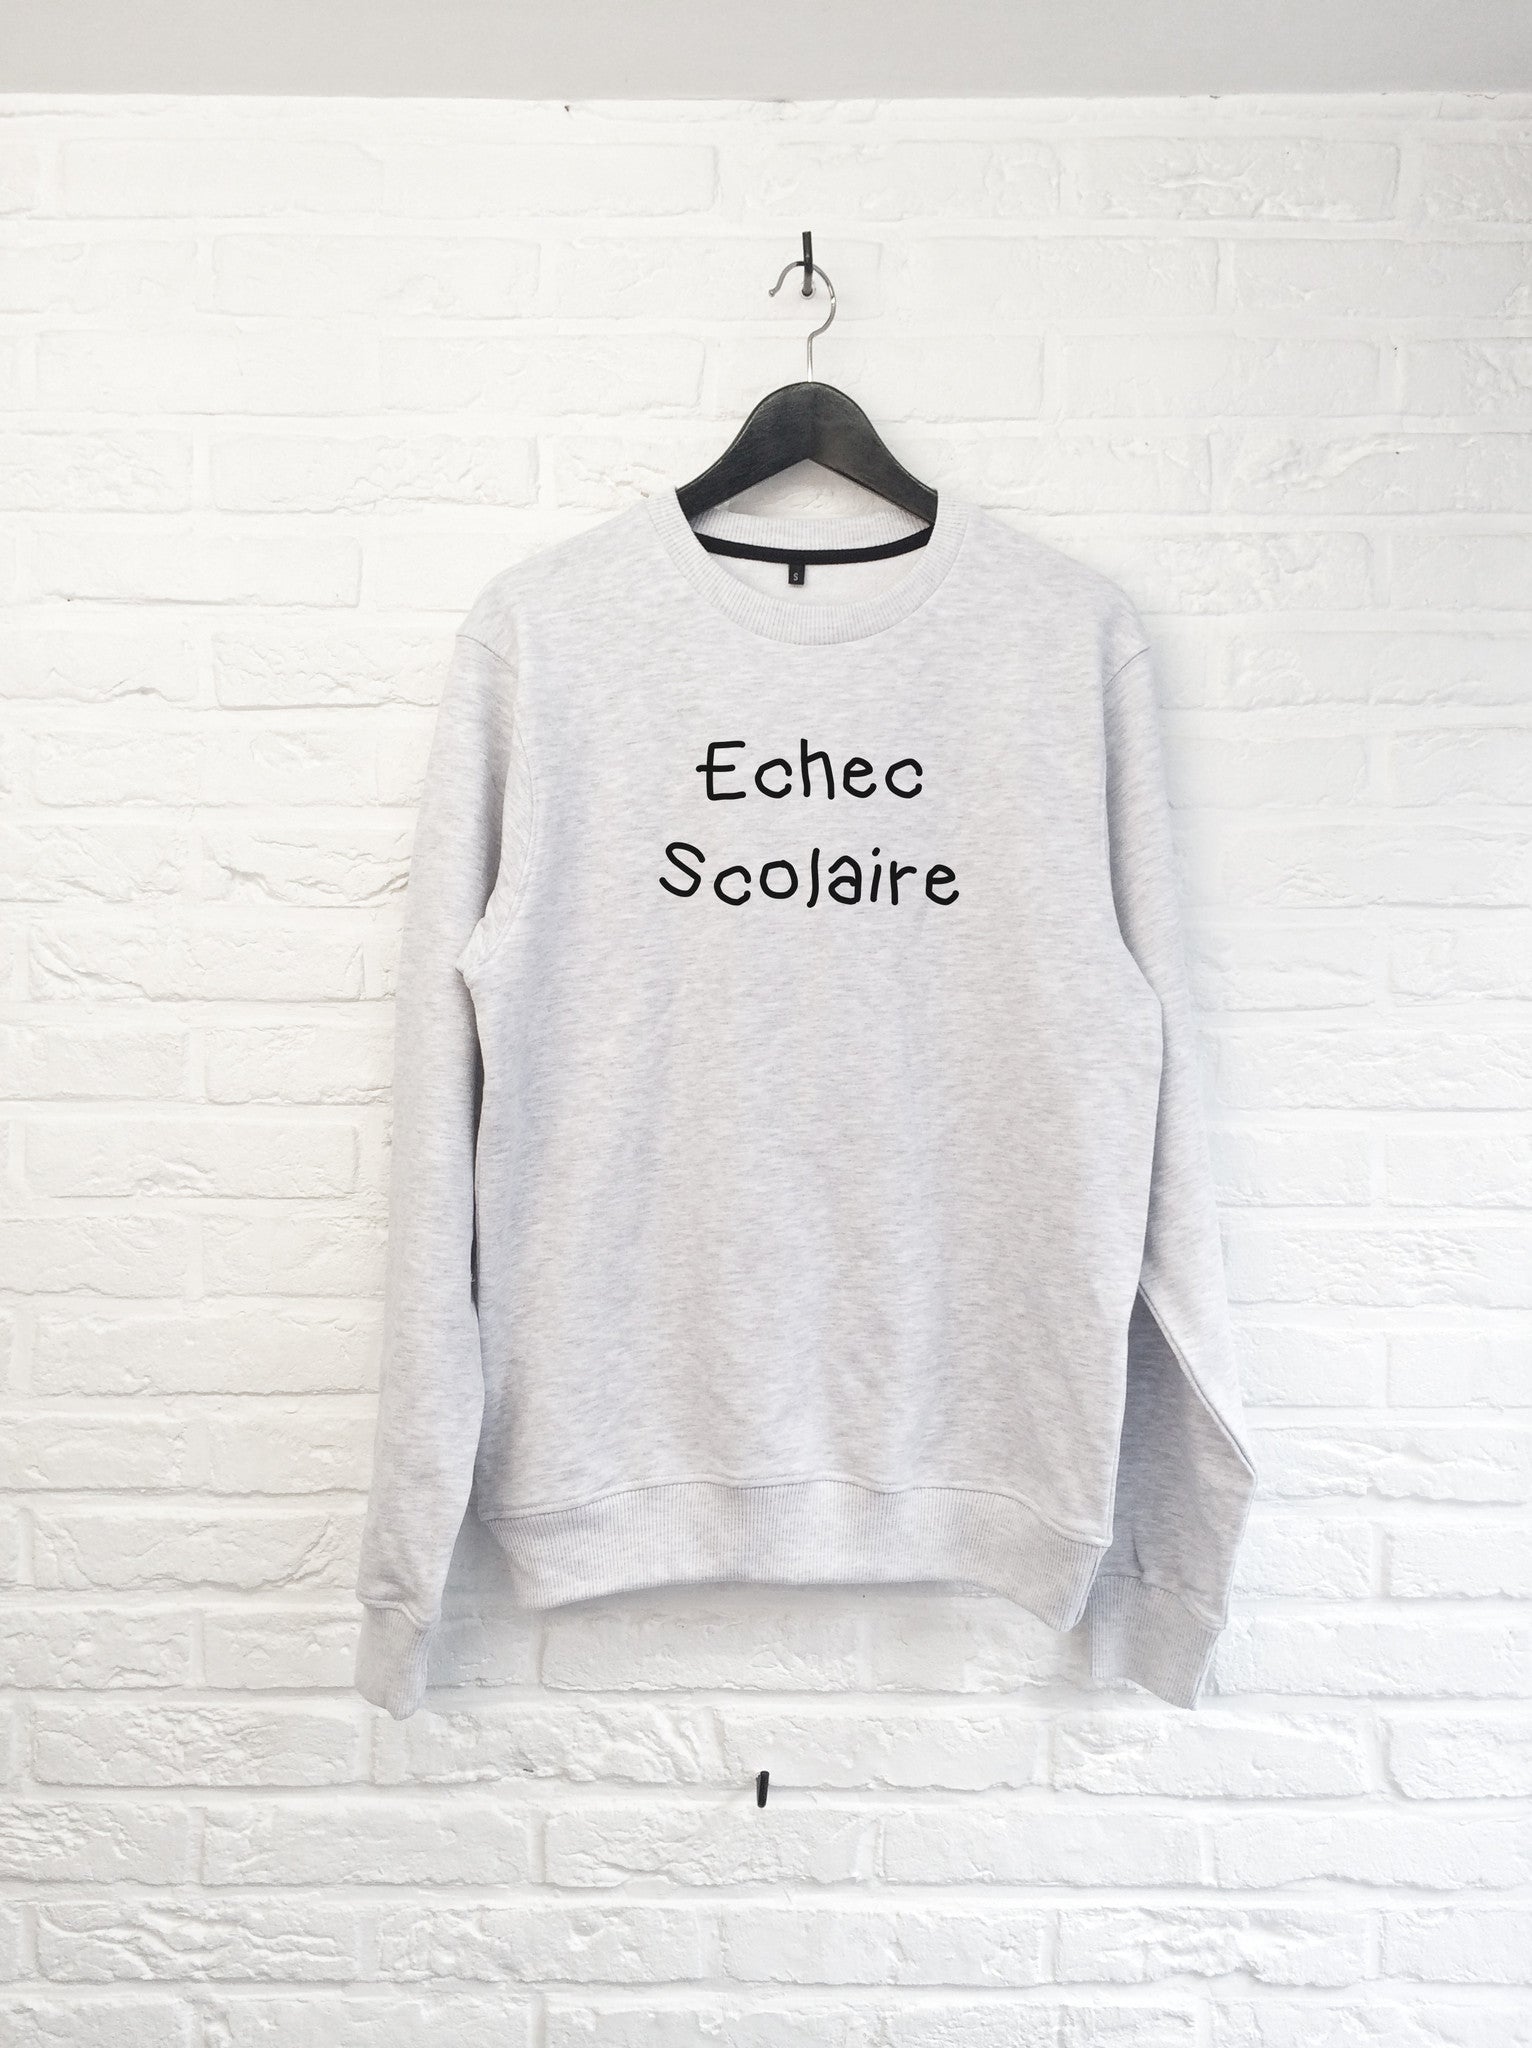 Echec Scolaire - Sweat-Sweat shirts-Atelier Amelot